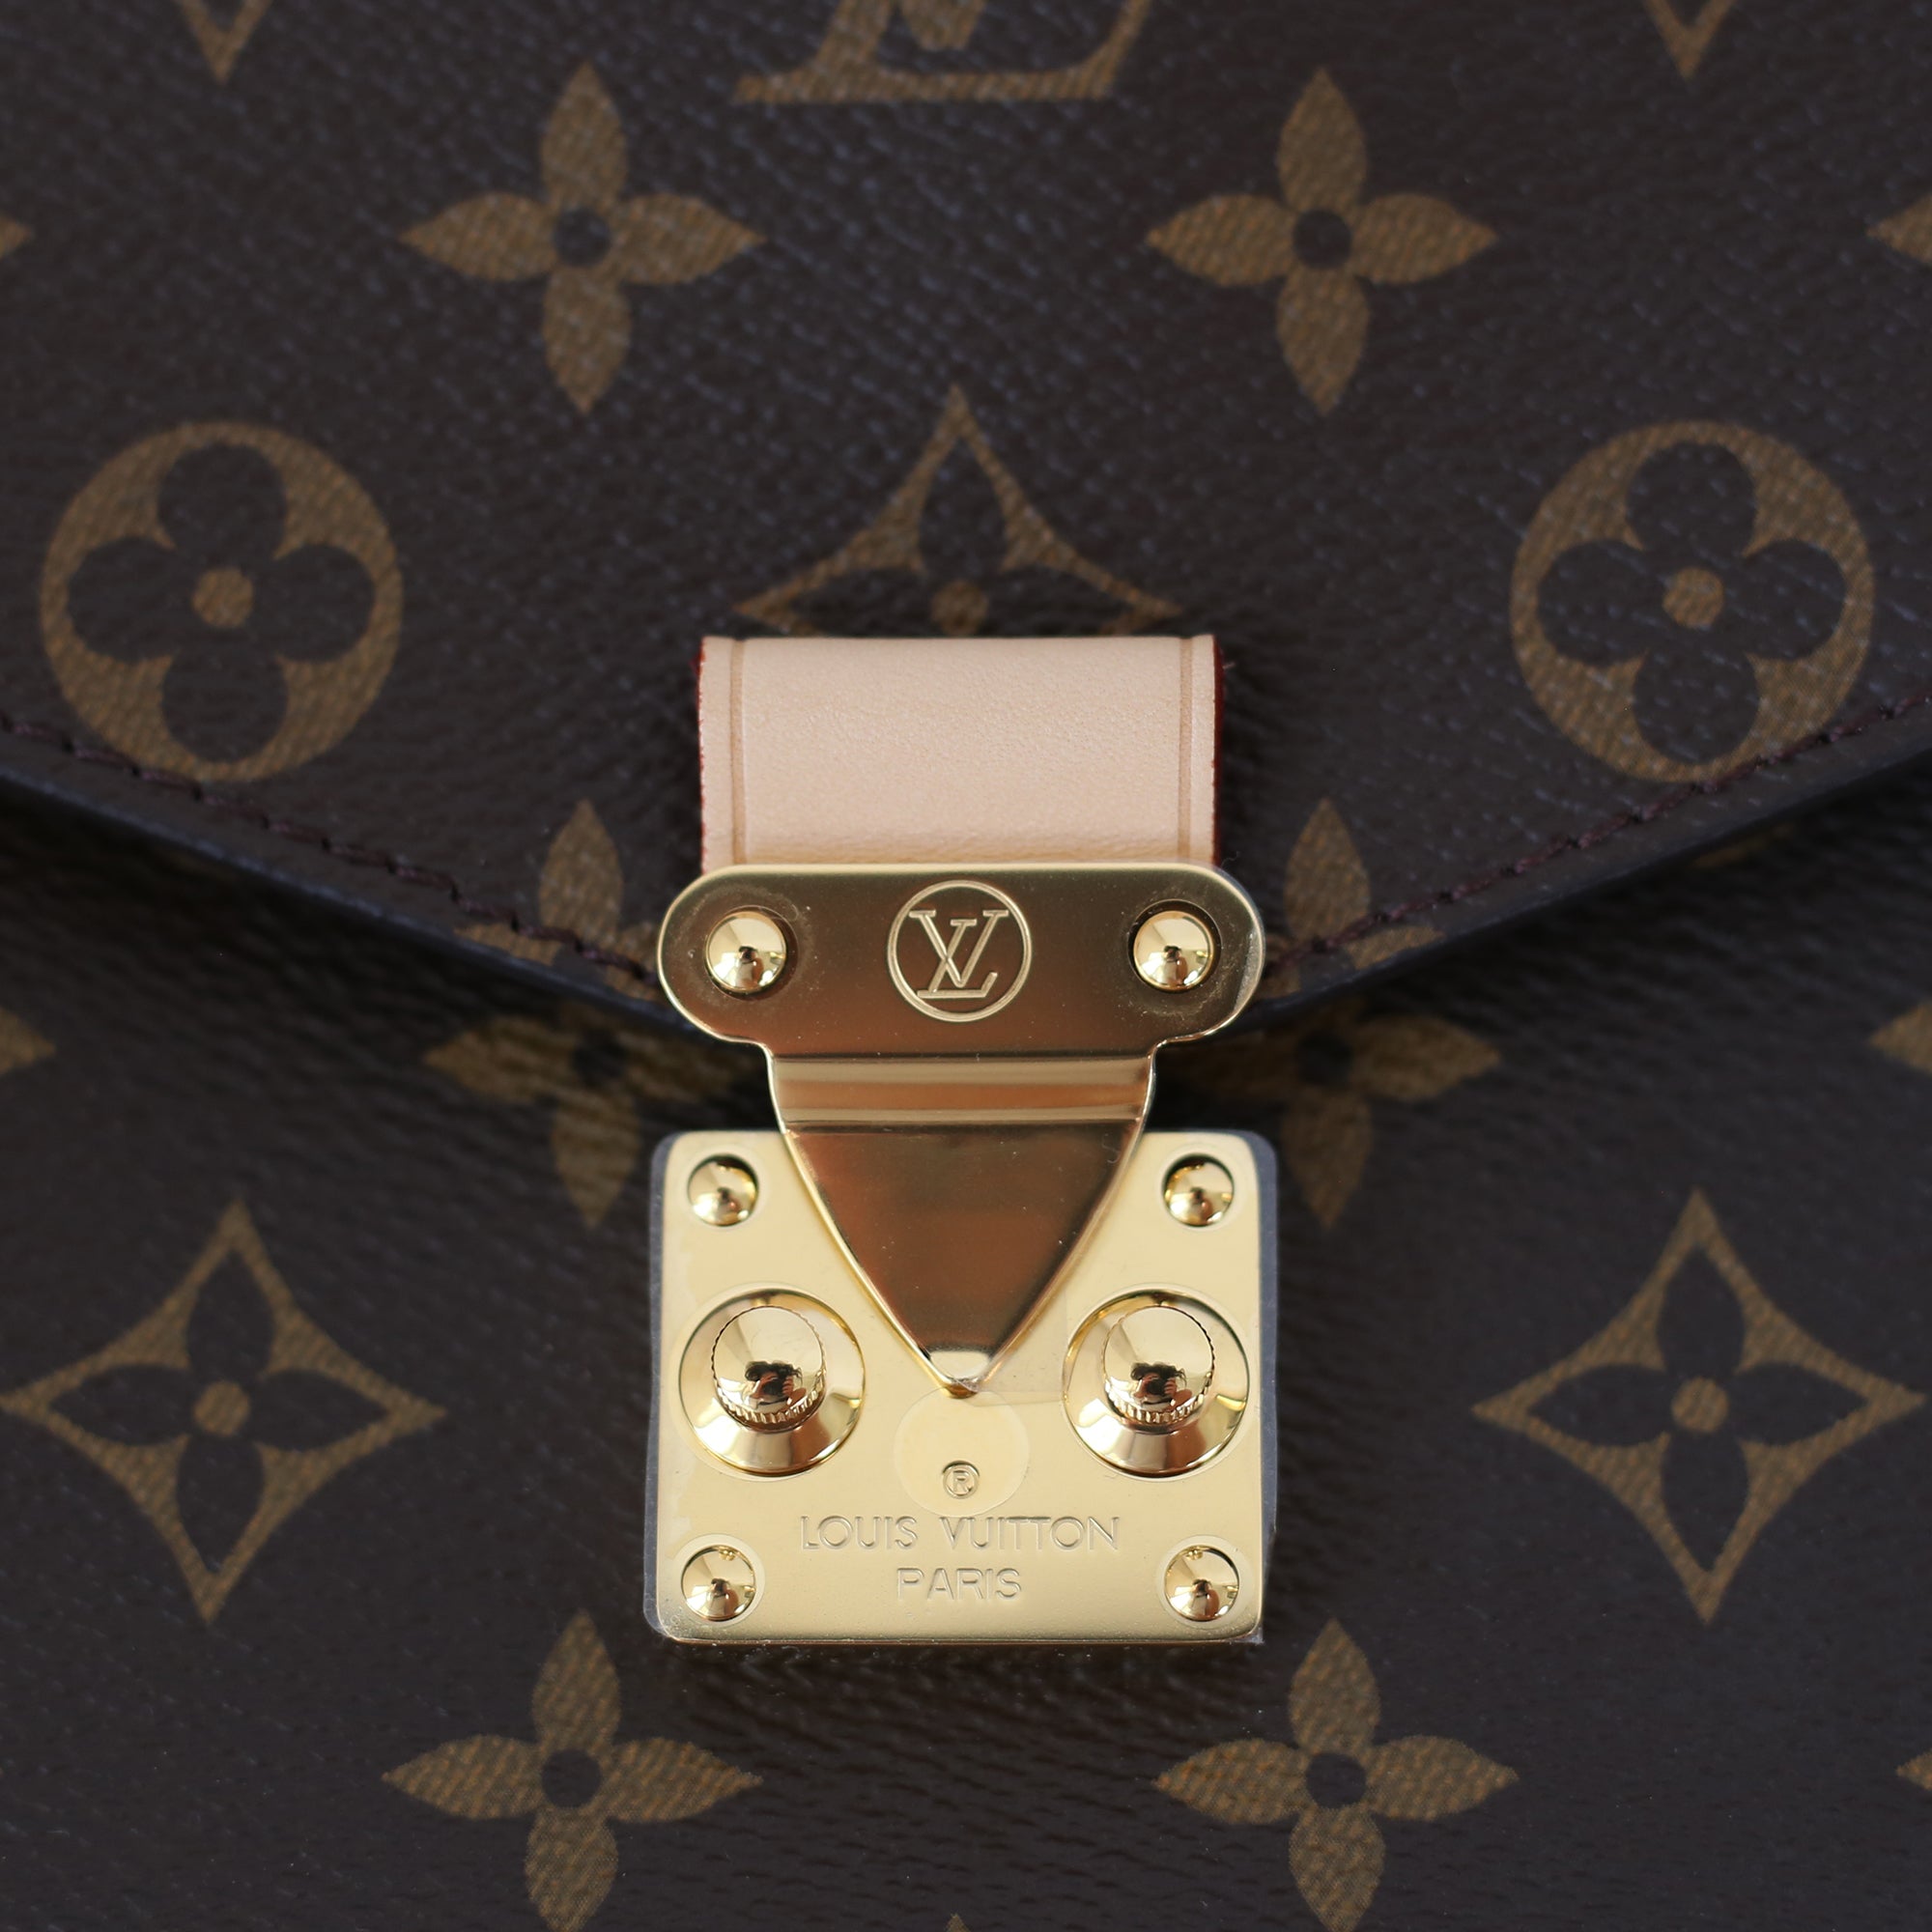 Authentic Louis Vuitton Metis Monogram M40781 Interior Material Has Broken  LD277